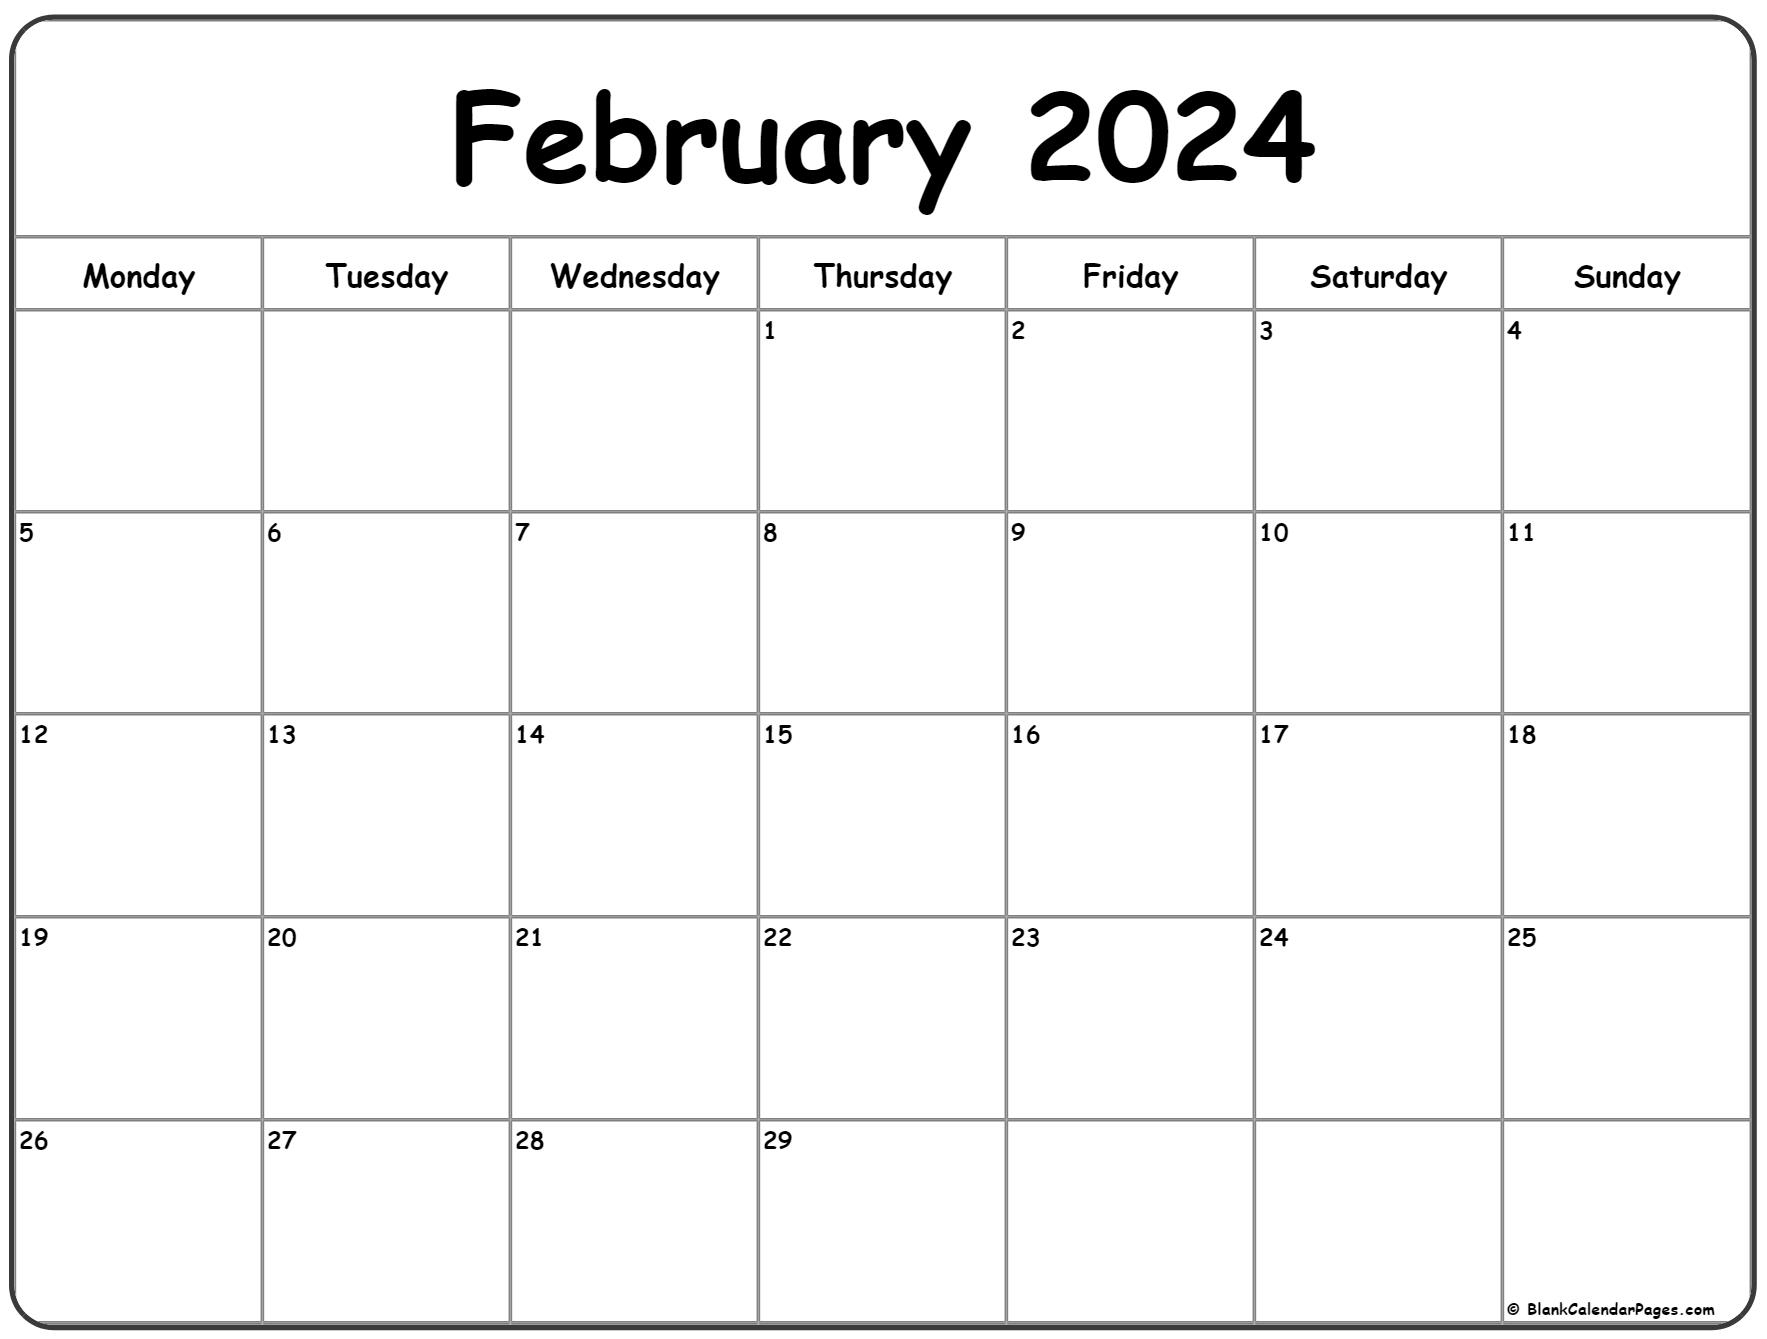 February 2024 Monday Calendar | Monday To Sunday for 2024 February Calendar Printable